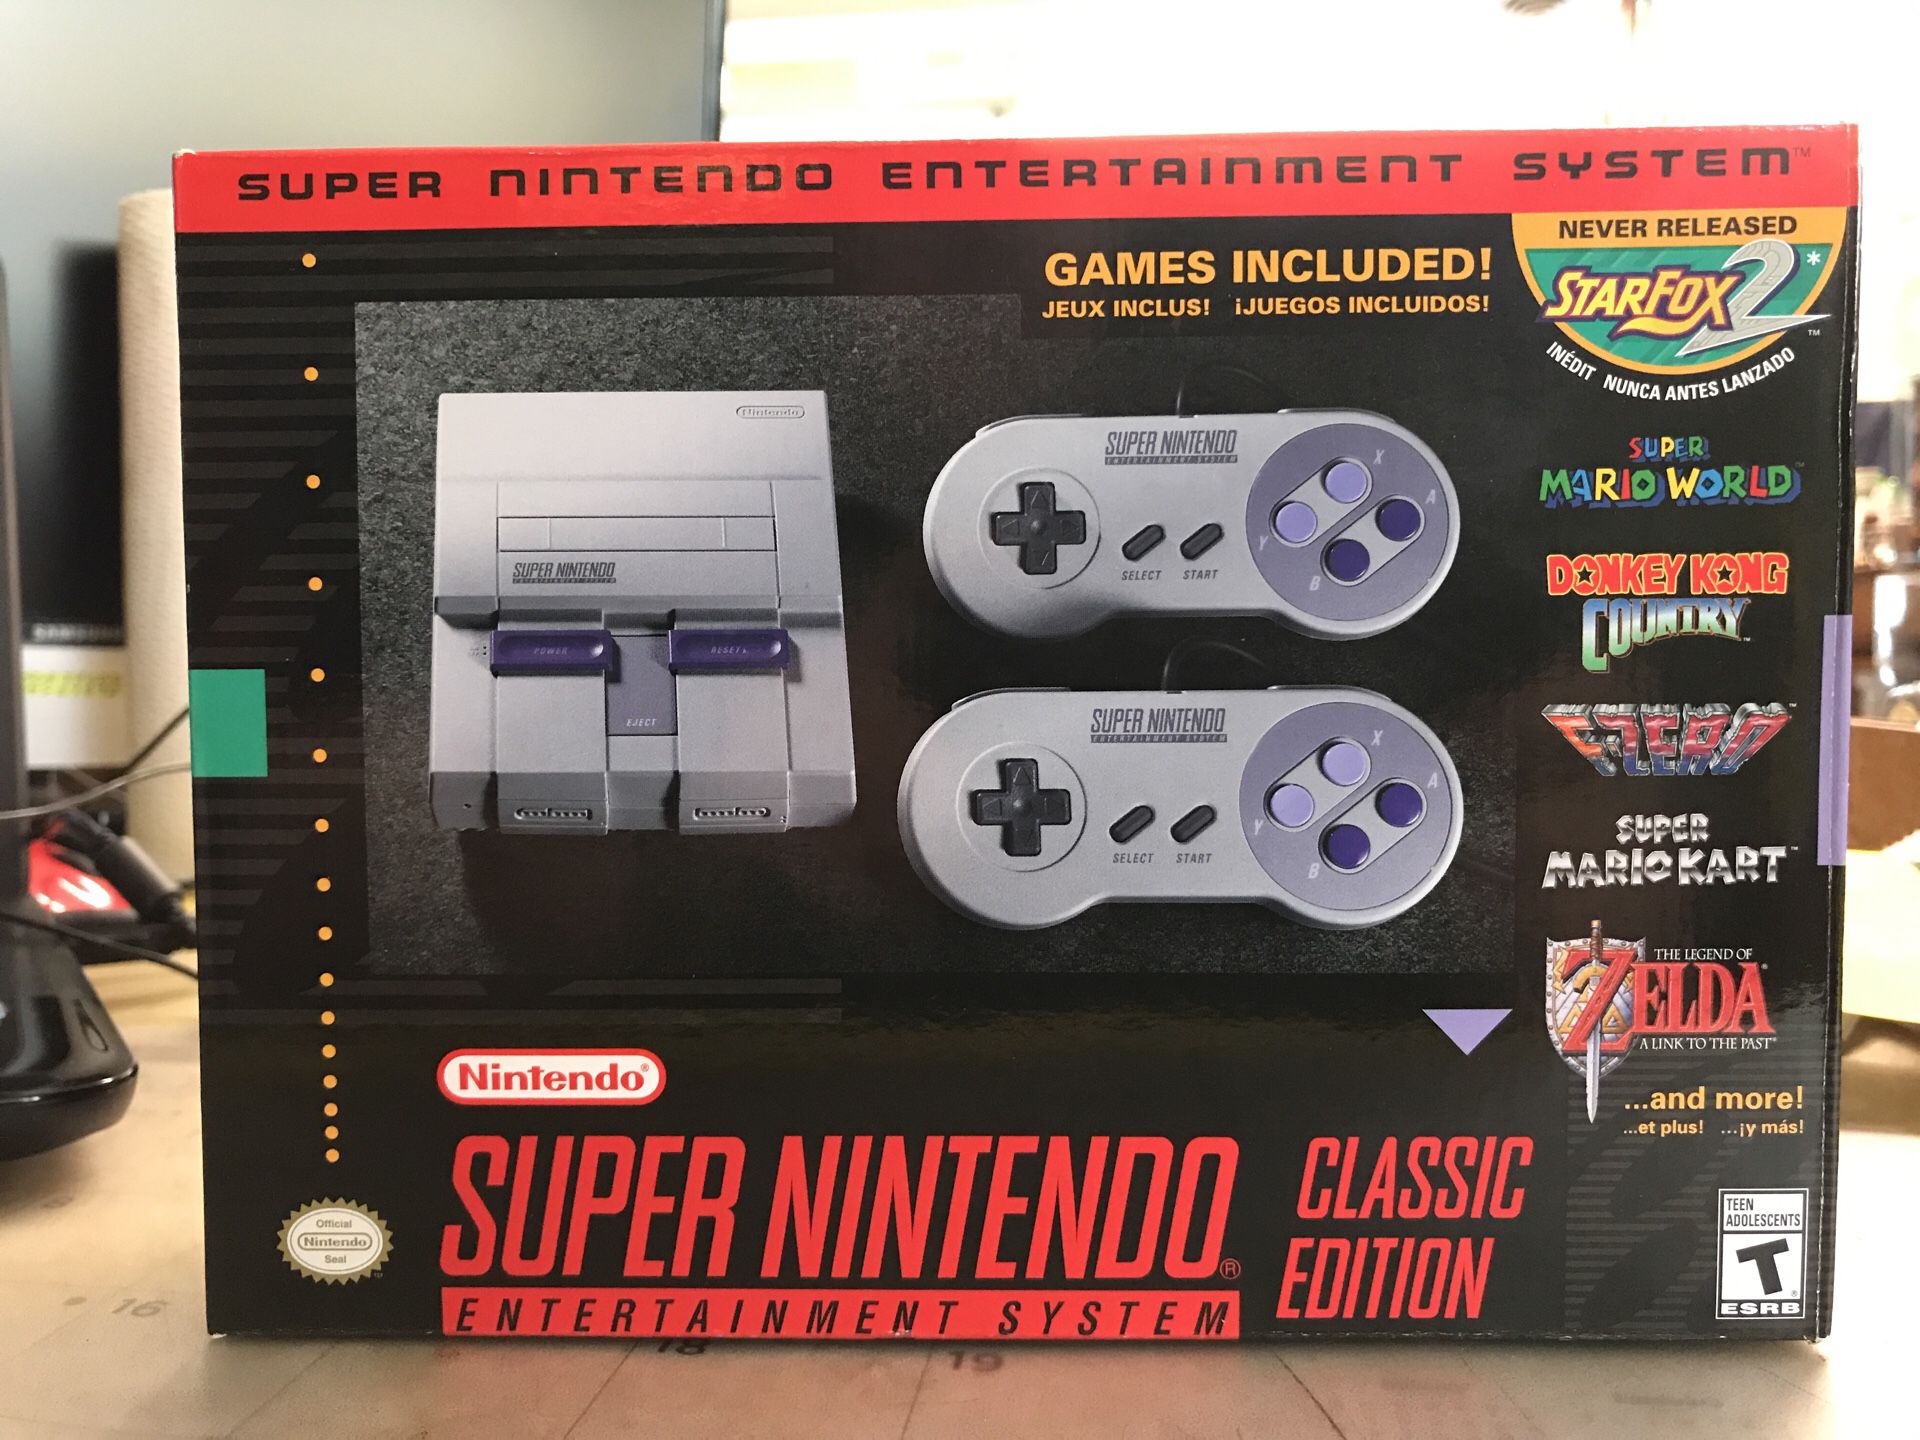 Super Nintendo classic edition new in box